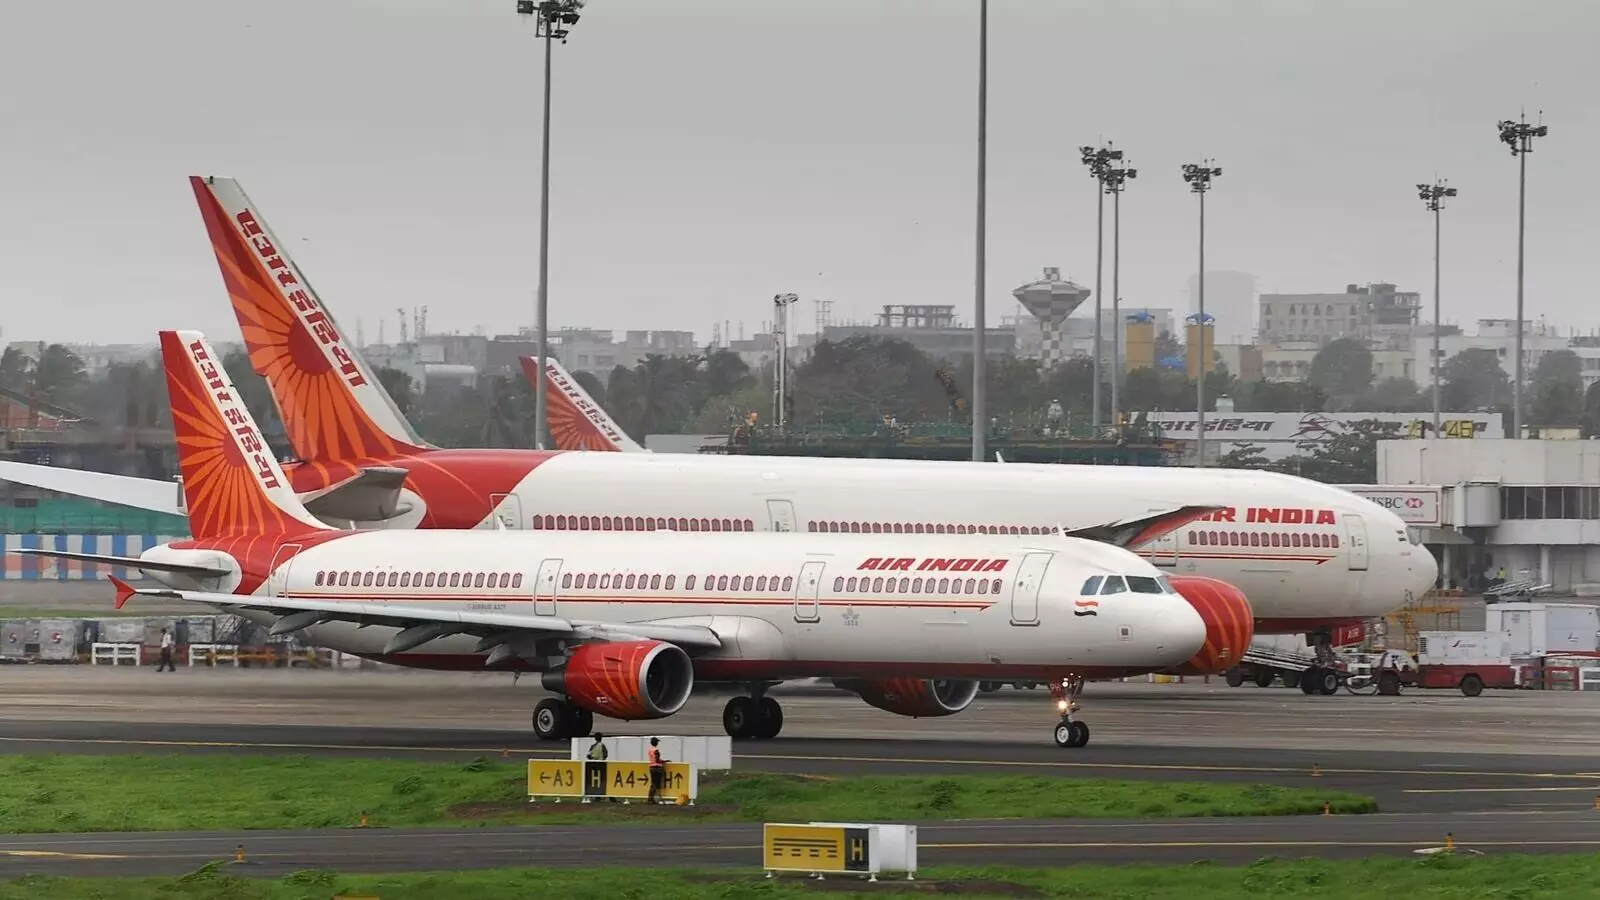 एयर इंडिया गैर-उड़ान कर्मचारियों के लिए मूल्यांकन प्रणाली शुरू करेगी